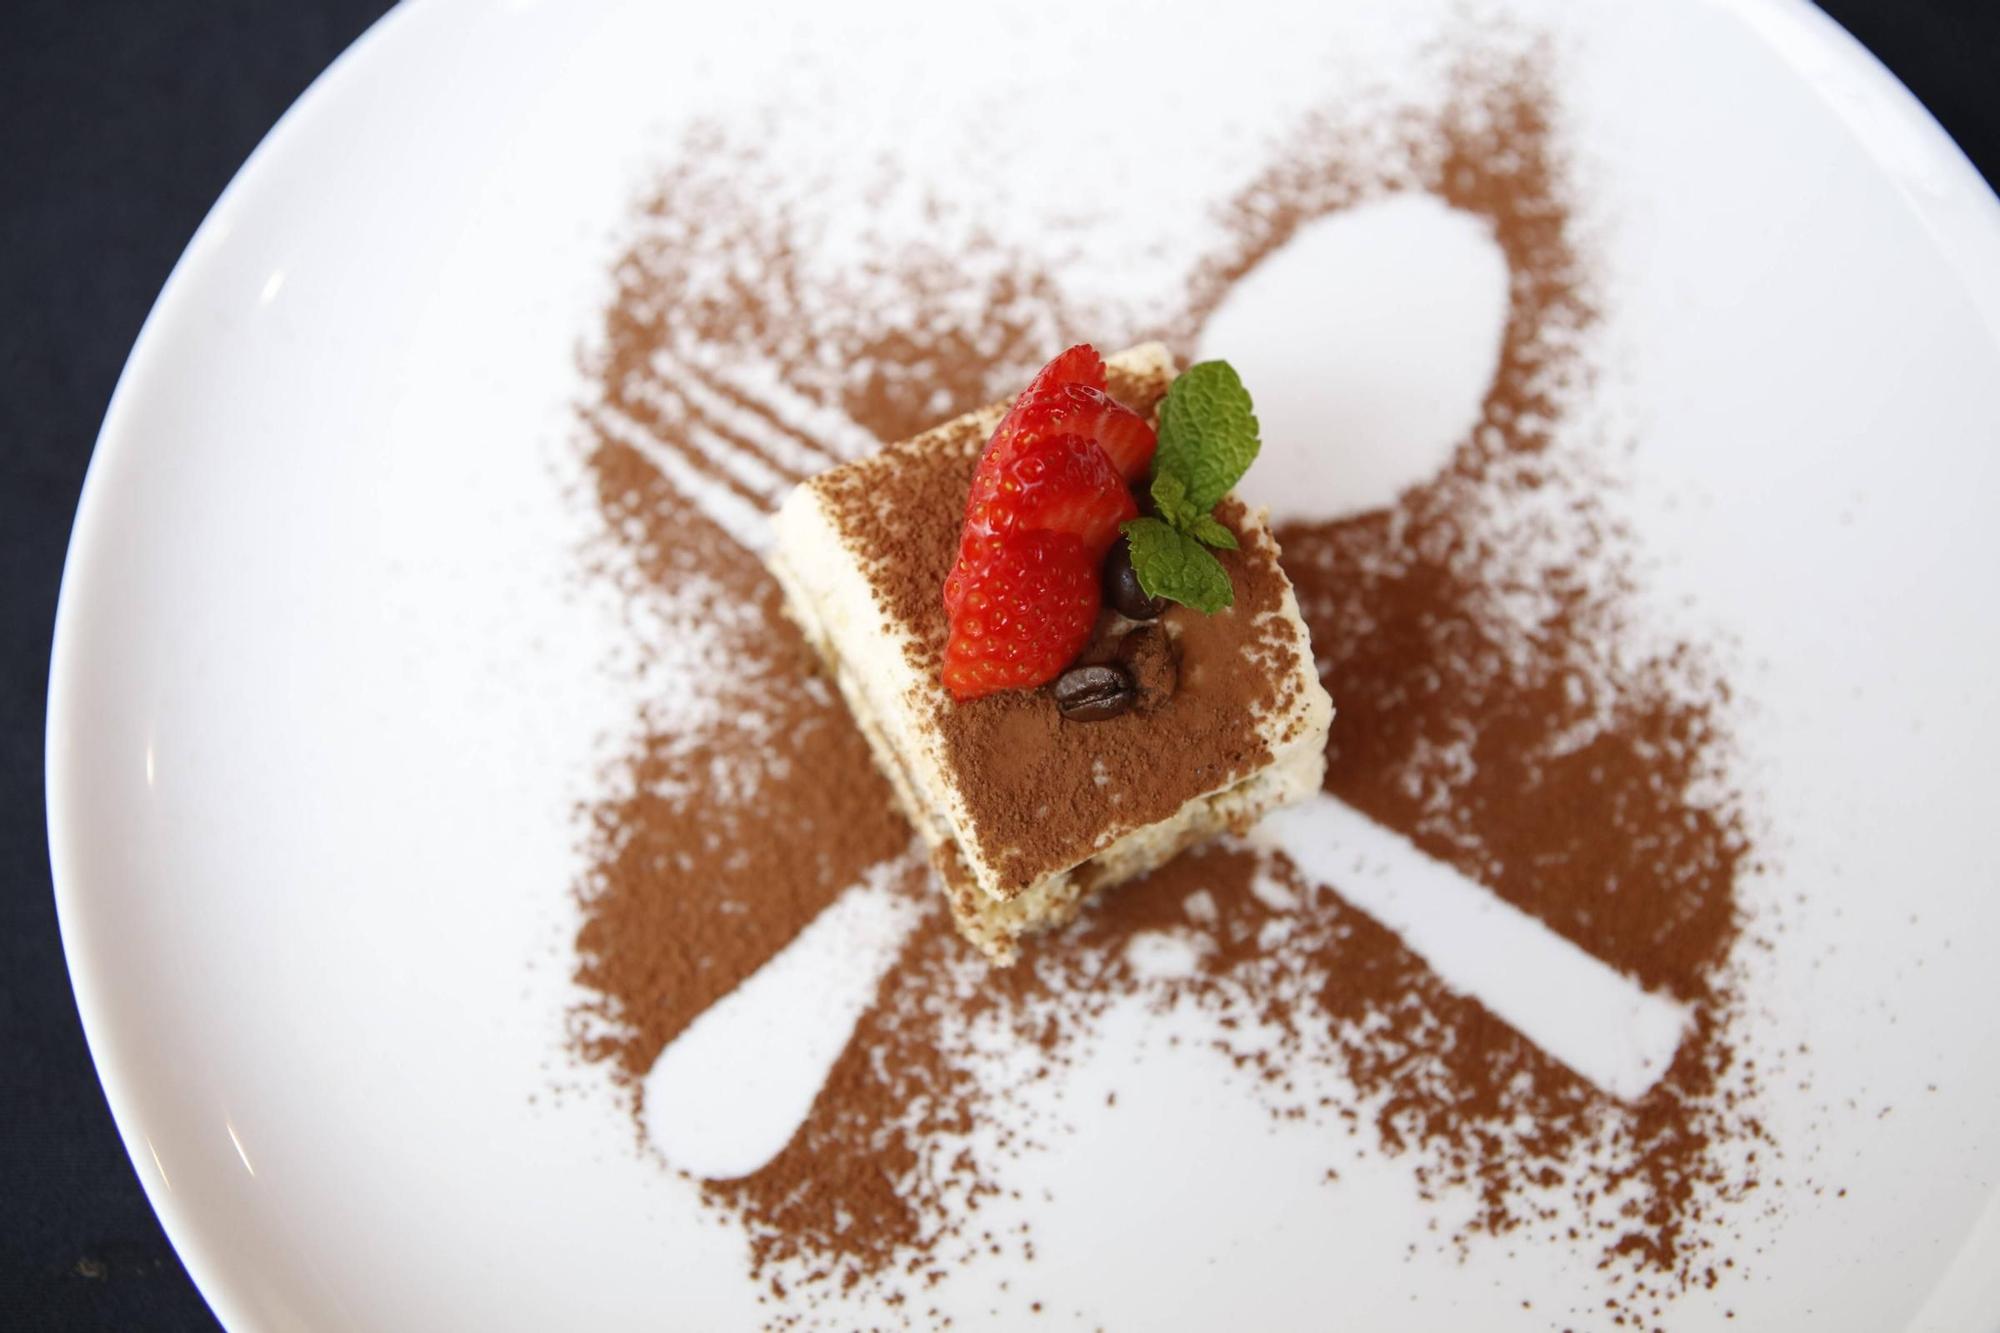 Das schön angerichtete Tiramisu ist eine der Dessert-Optionen.